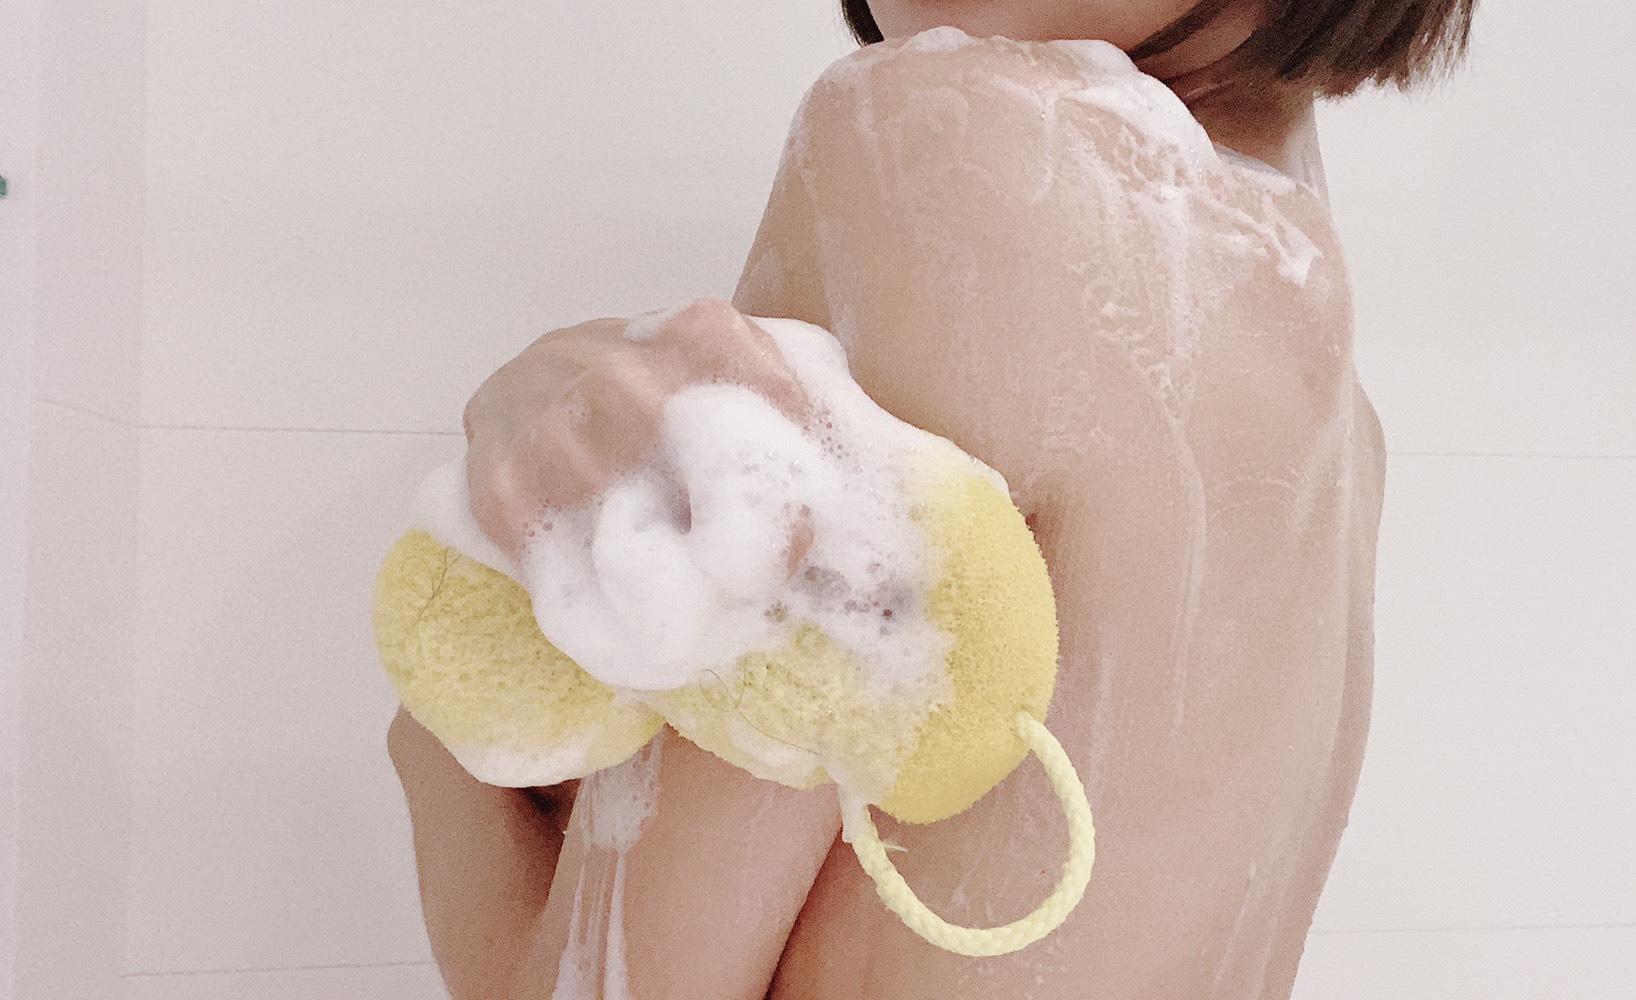 [啾團] 純萃自然Opureal純萃精油液態皂沐浴露,大人小孩都可以使用,取自自然的安心沐浴露